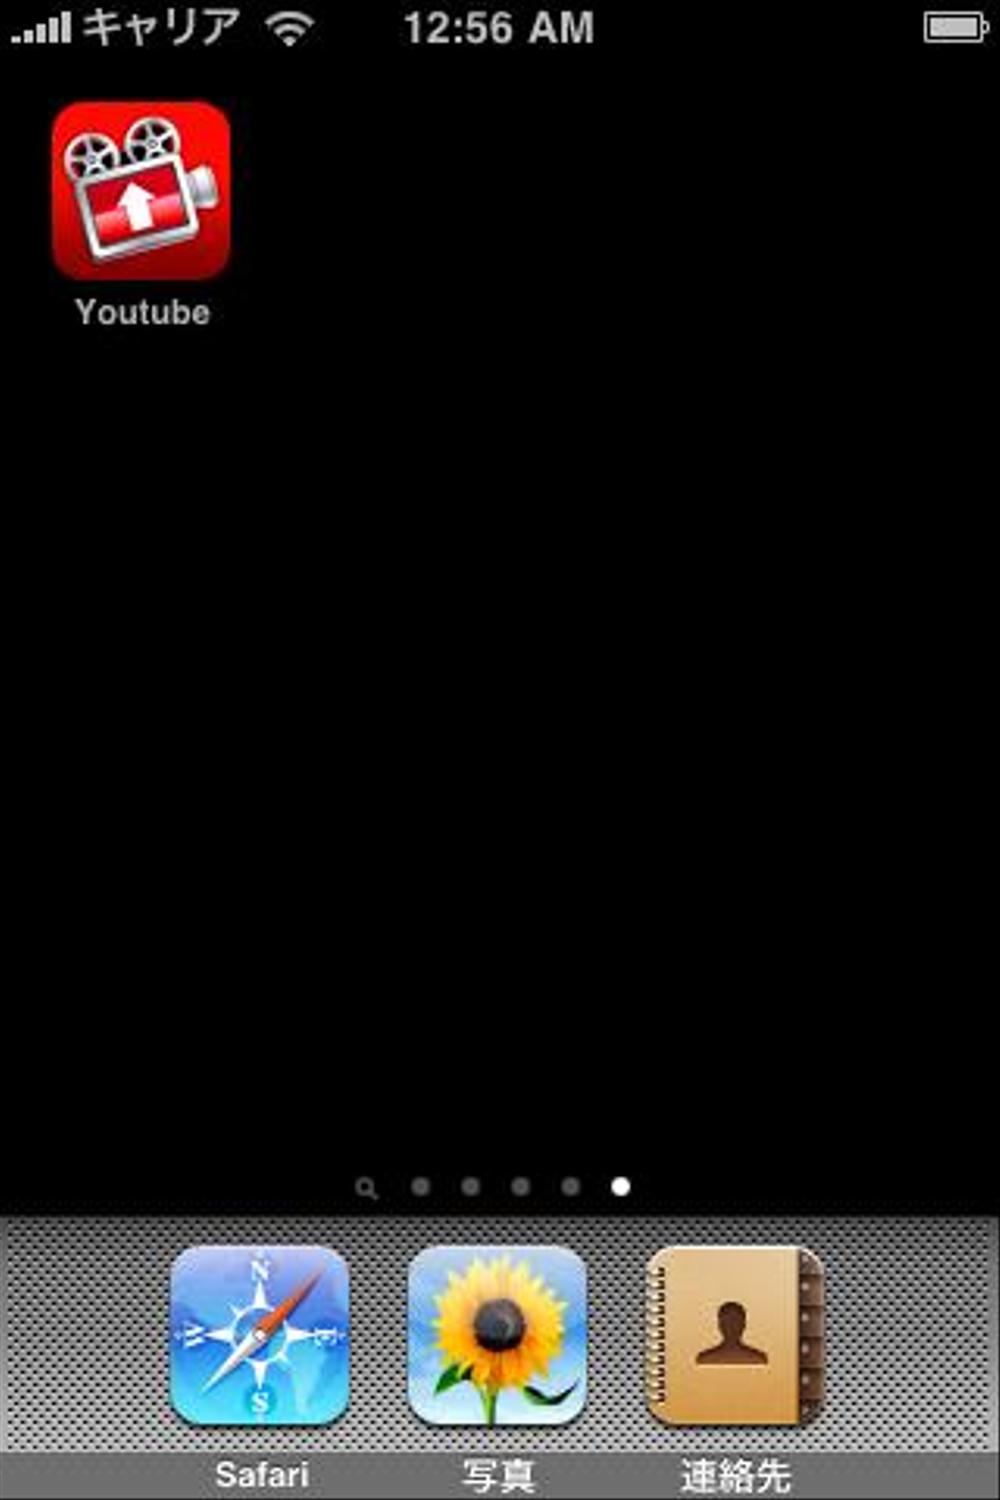 【Youtubeへ動画をアップロードするアプリ】iPhoneアプリケーション用アイコン作成